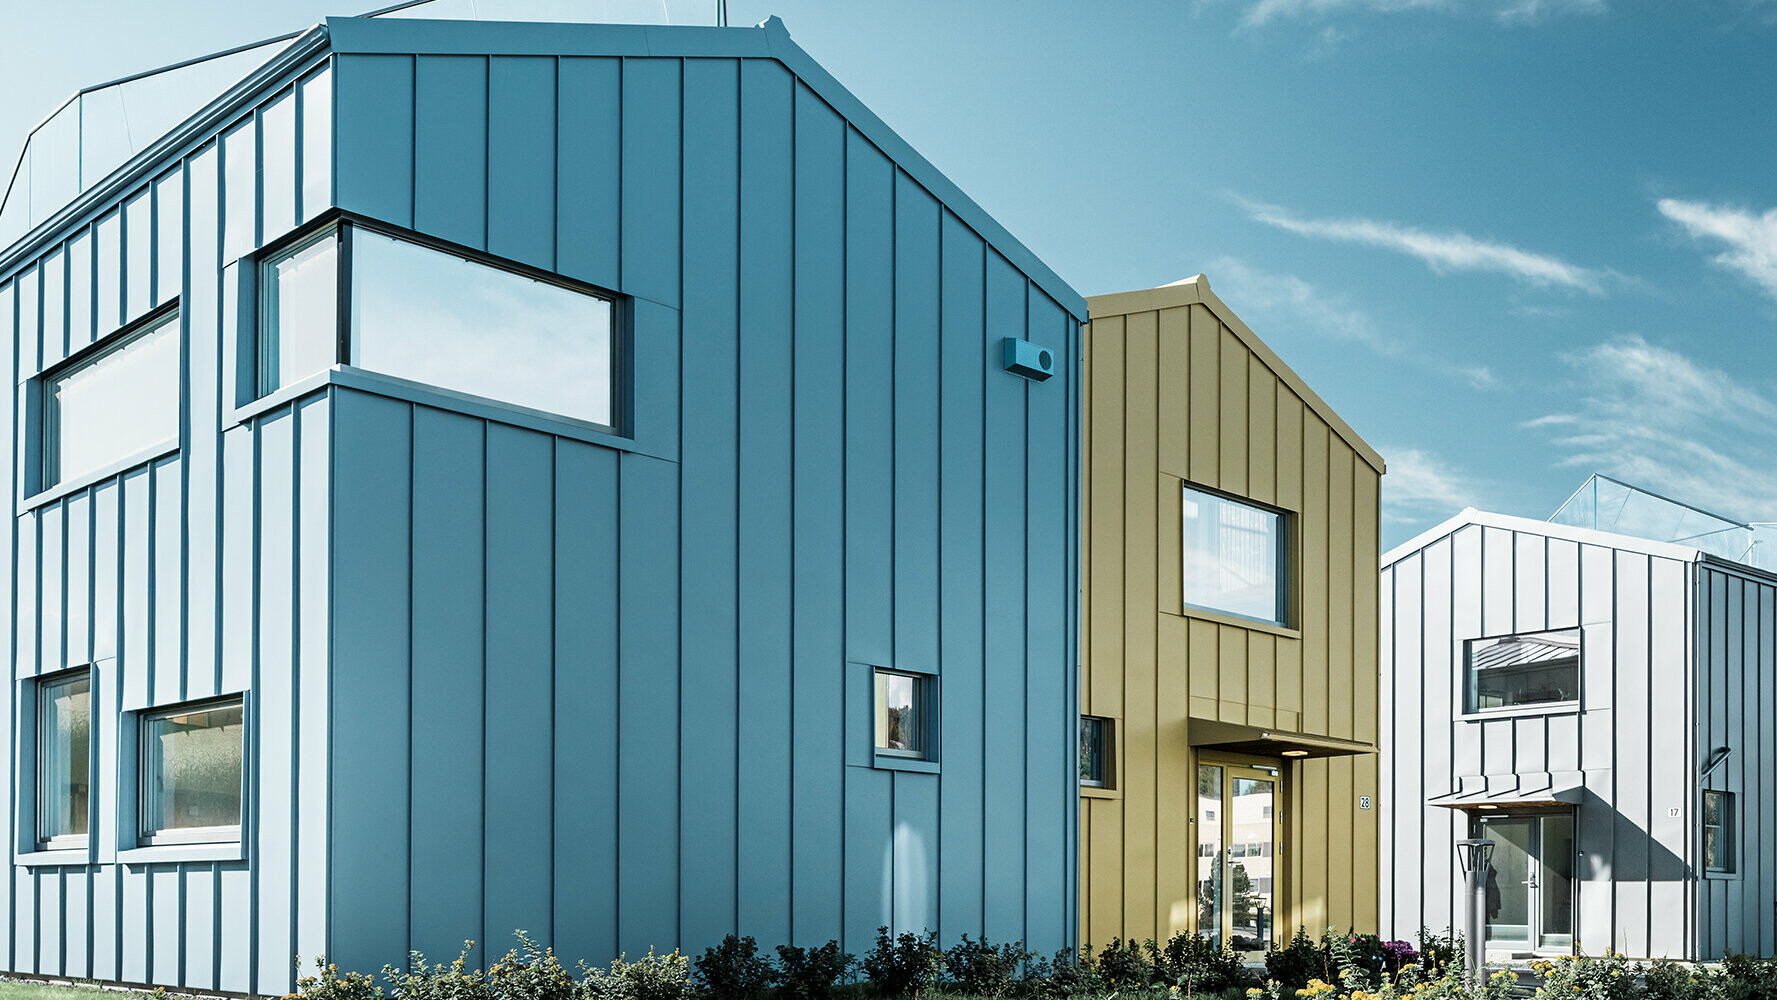 enfamiljshus i bostadsområde med färgglada tak och fasader av aluminium